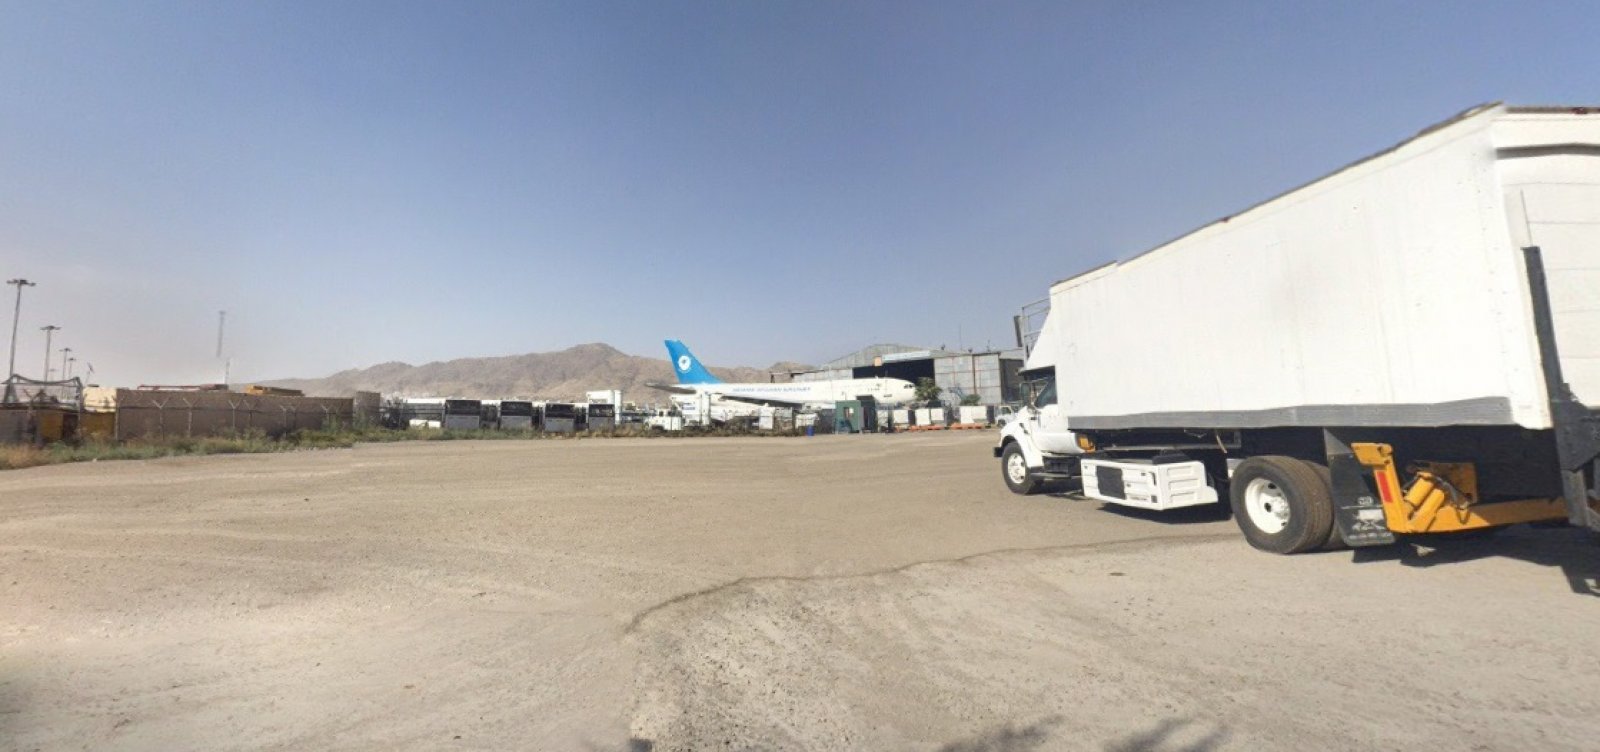 Aeroporto de Cabul, no Afeganistão